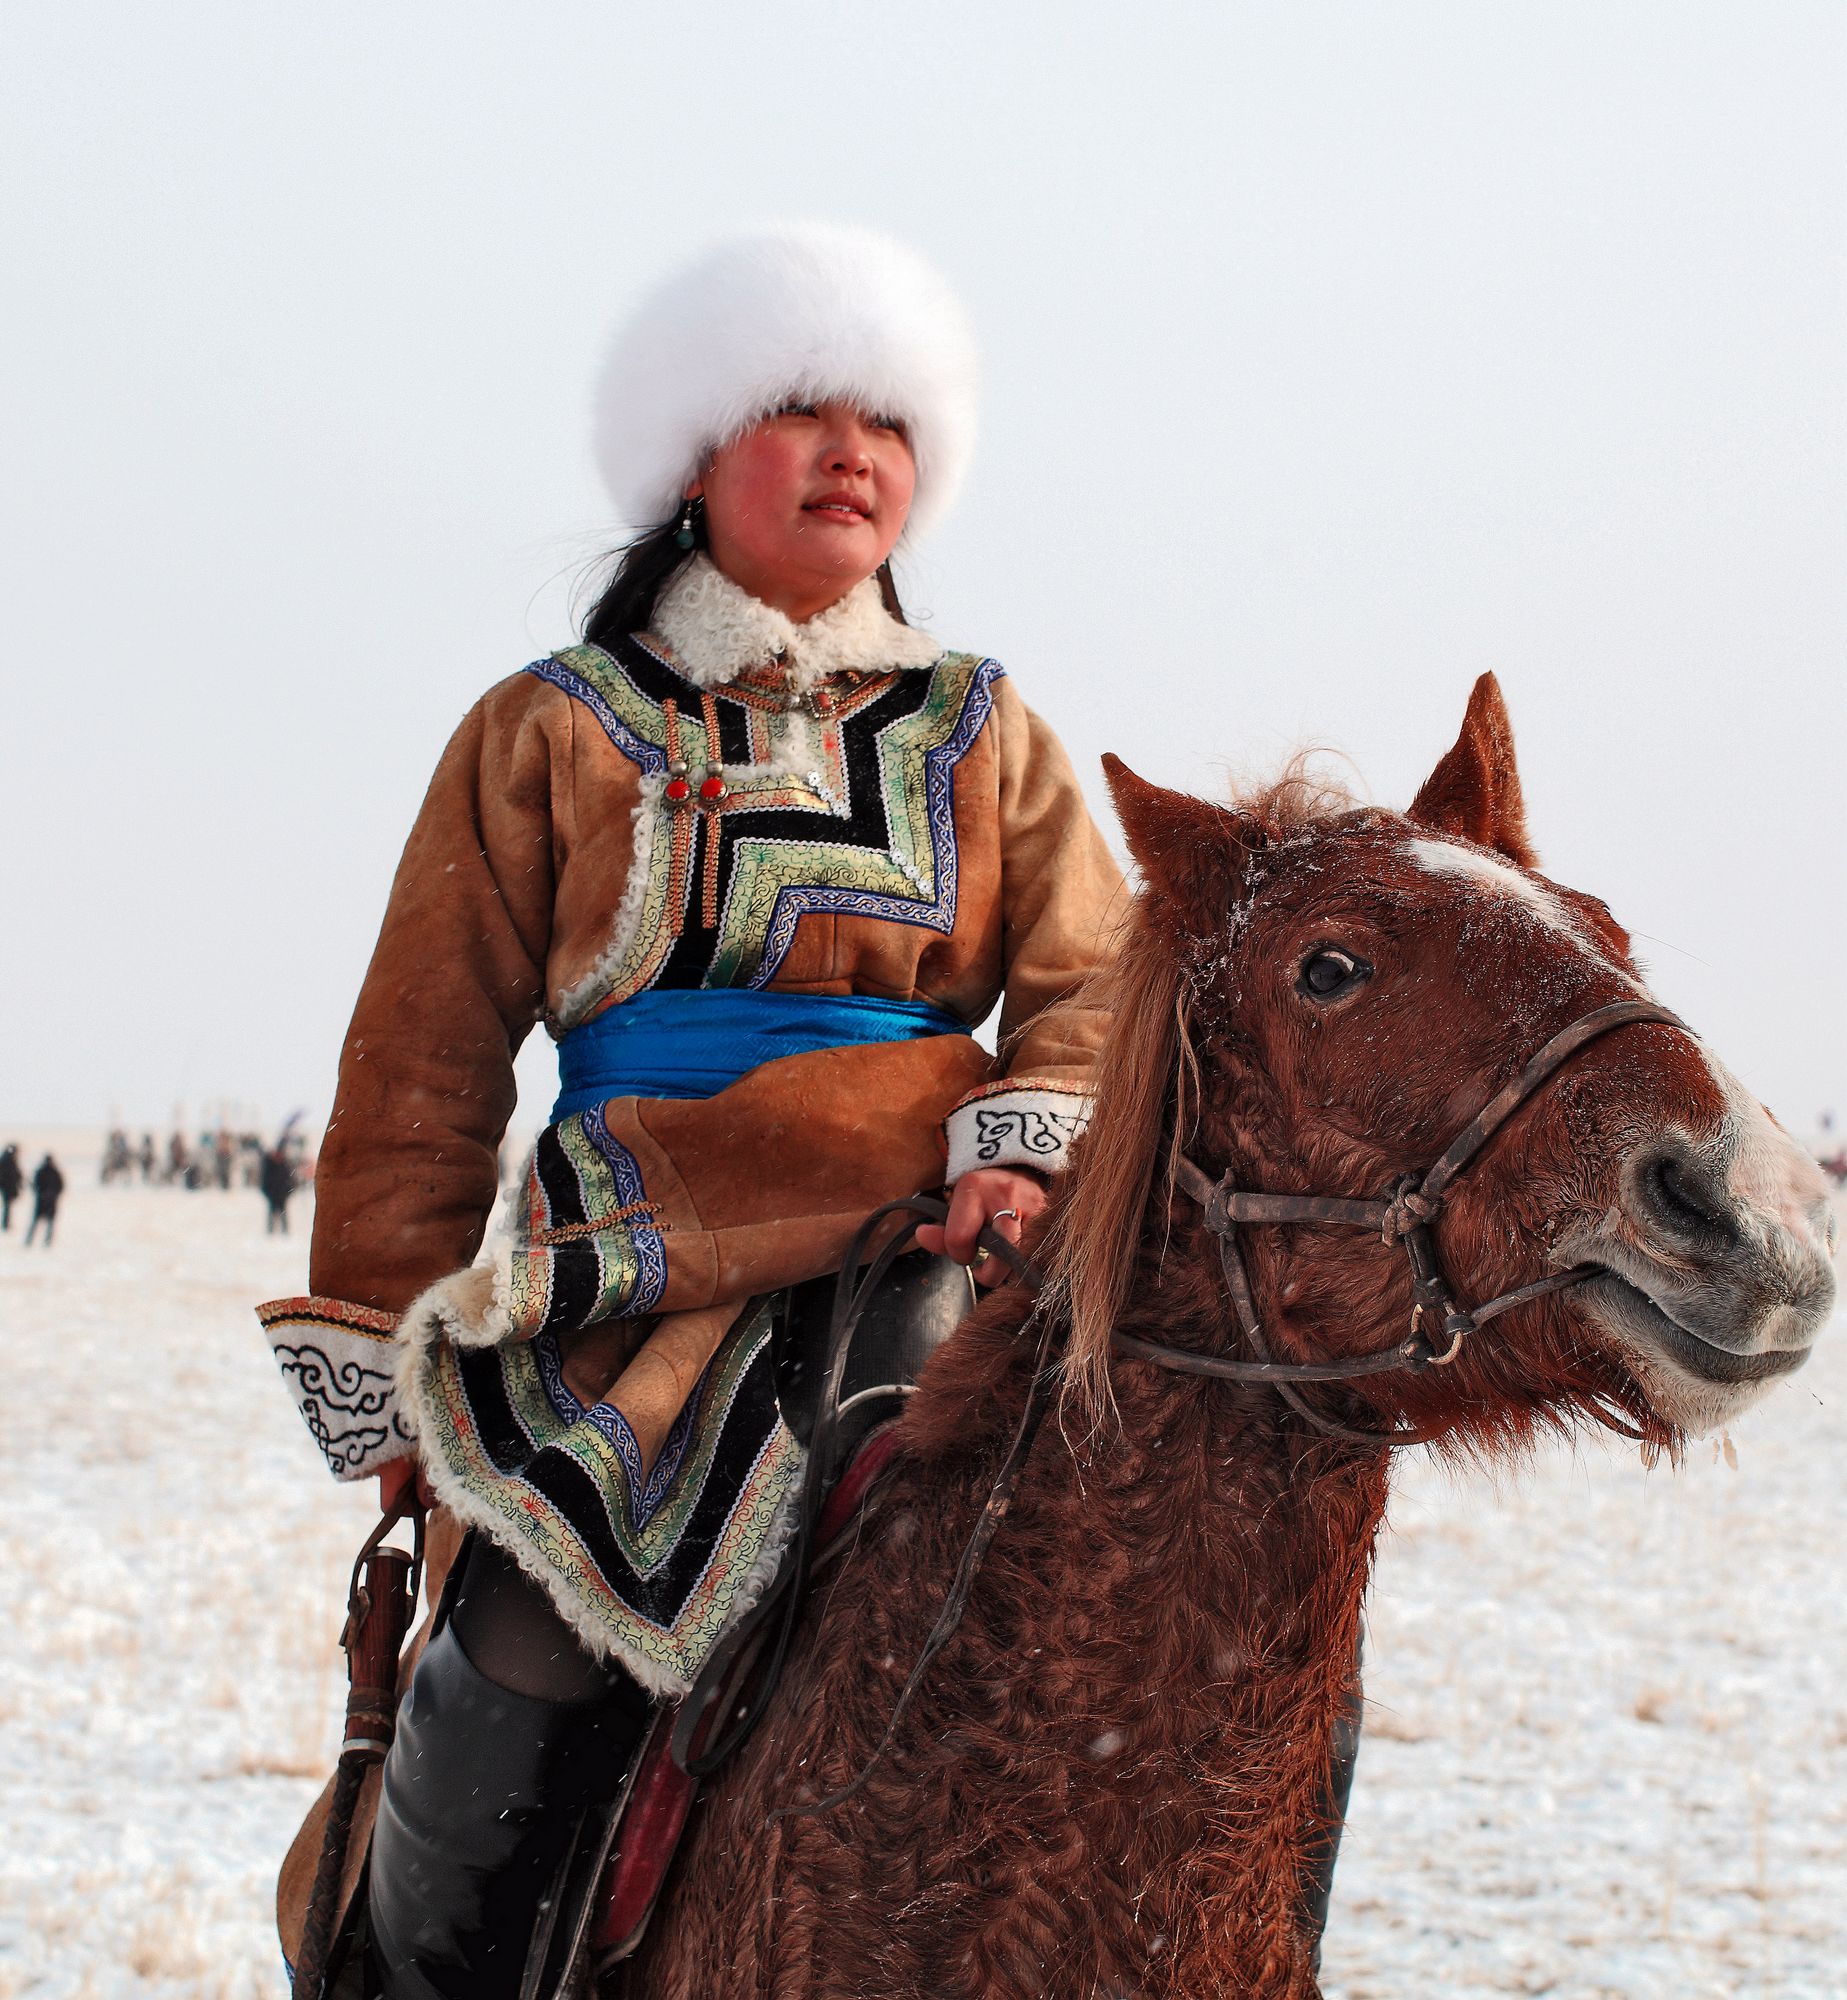 原来蒙古族妇女的头饰，就是蒙古族女人的一生-草原元素---蒙古元素 Mongolia Elements